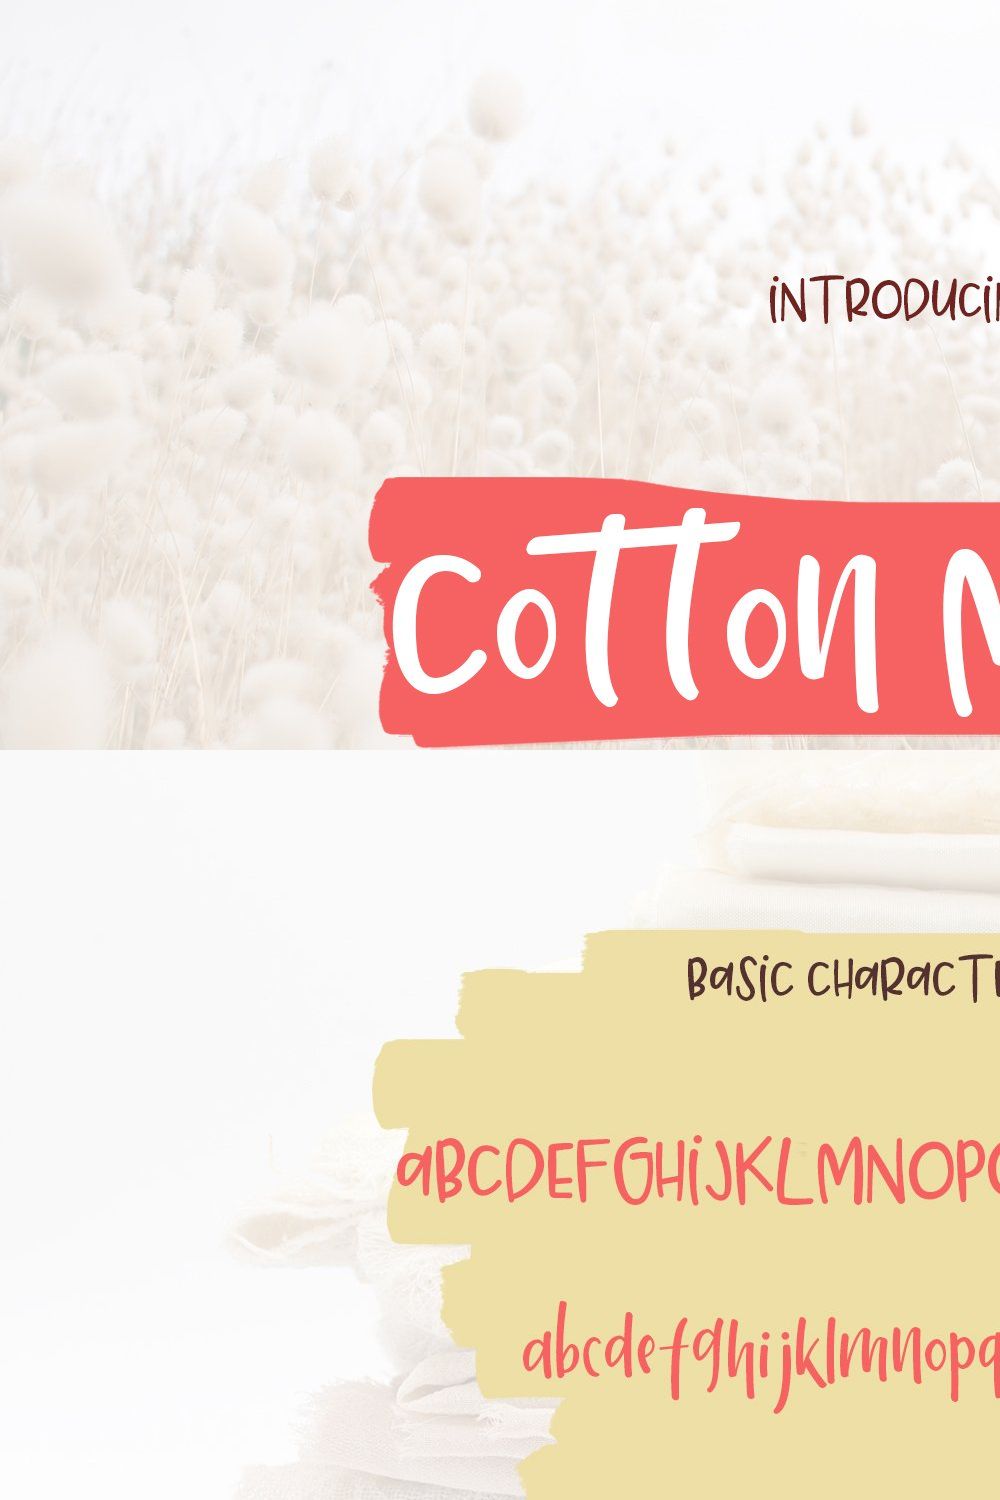 Cotton Merlot - a handwritten font pinterest preview image.